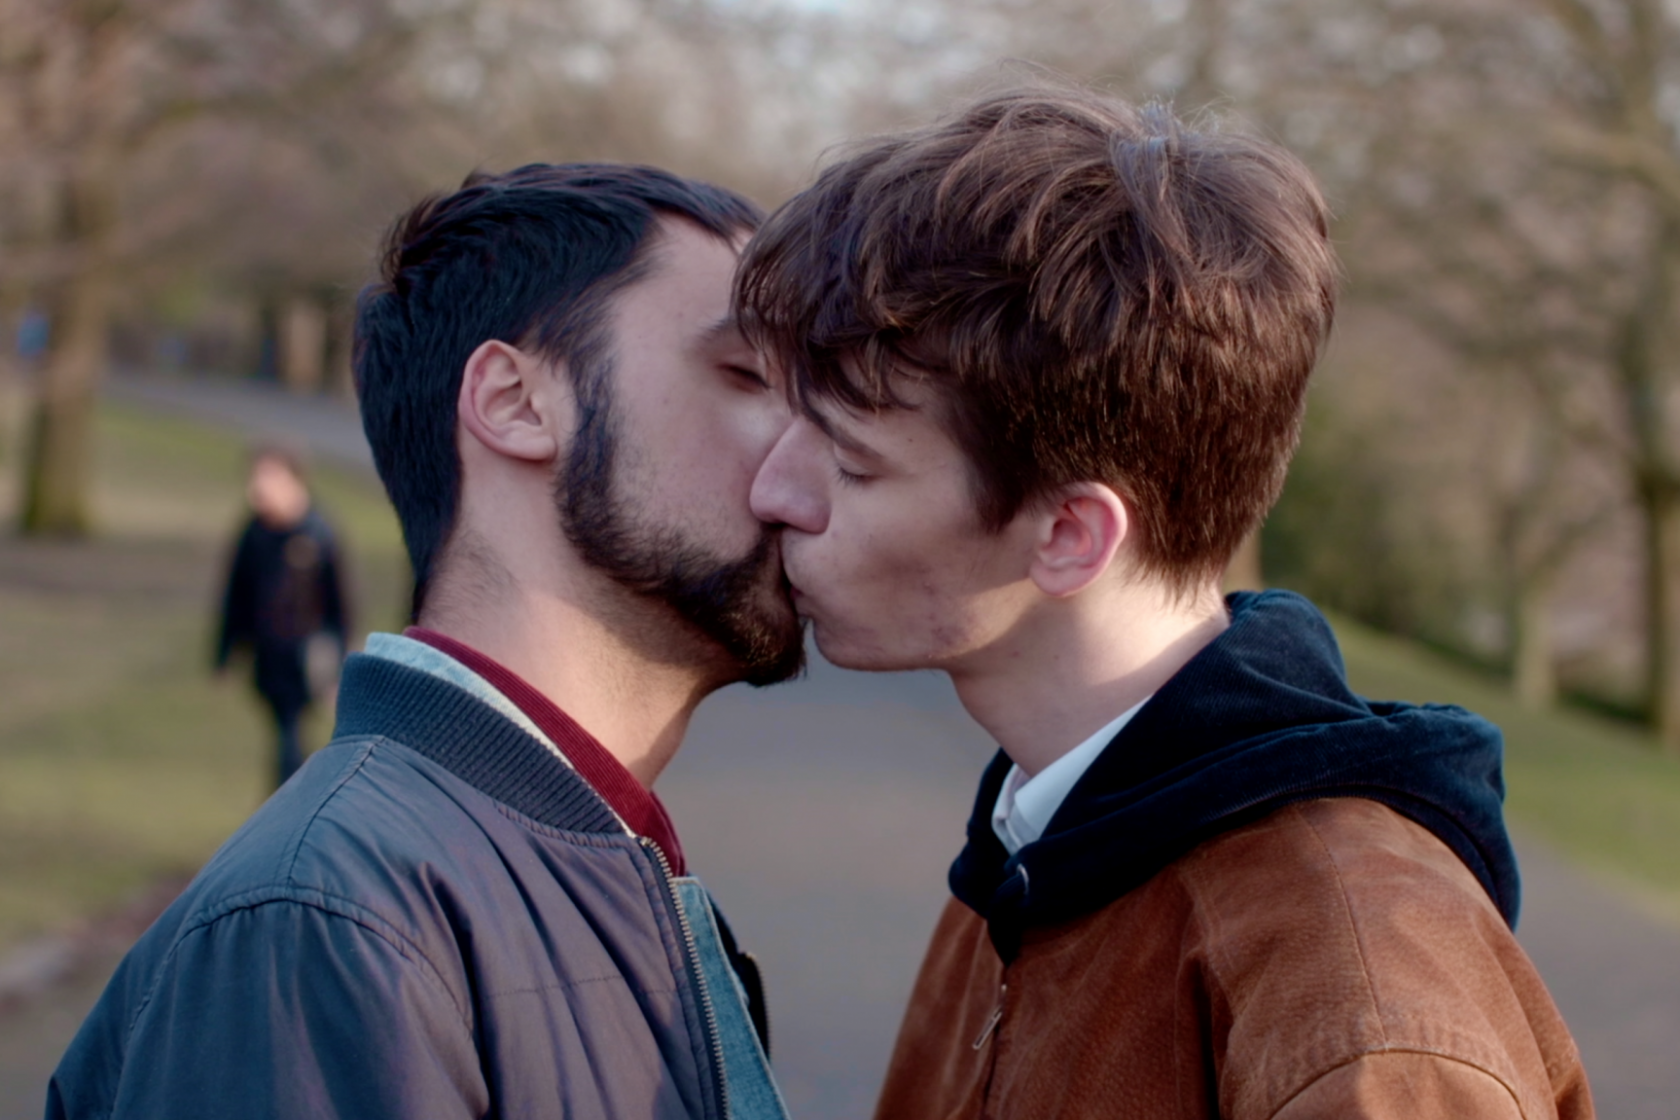 Photo of gay men kissing